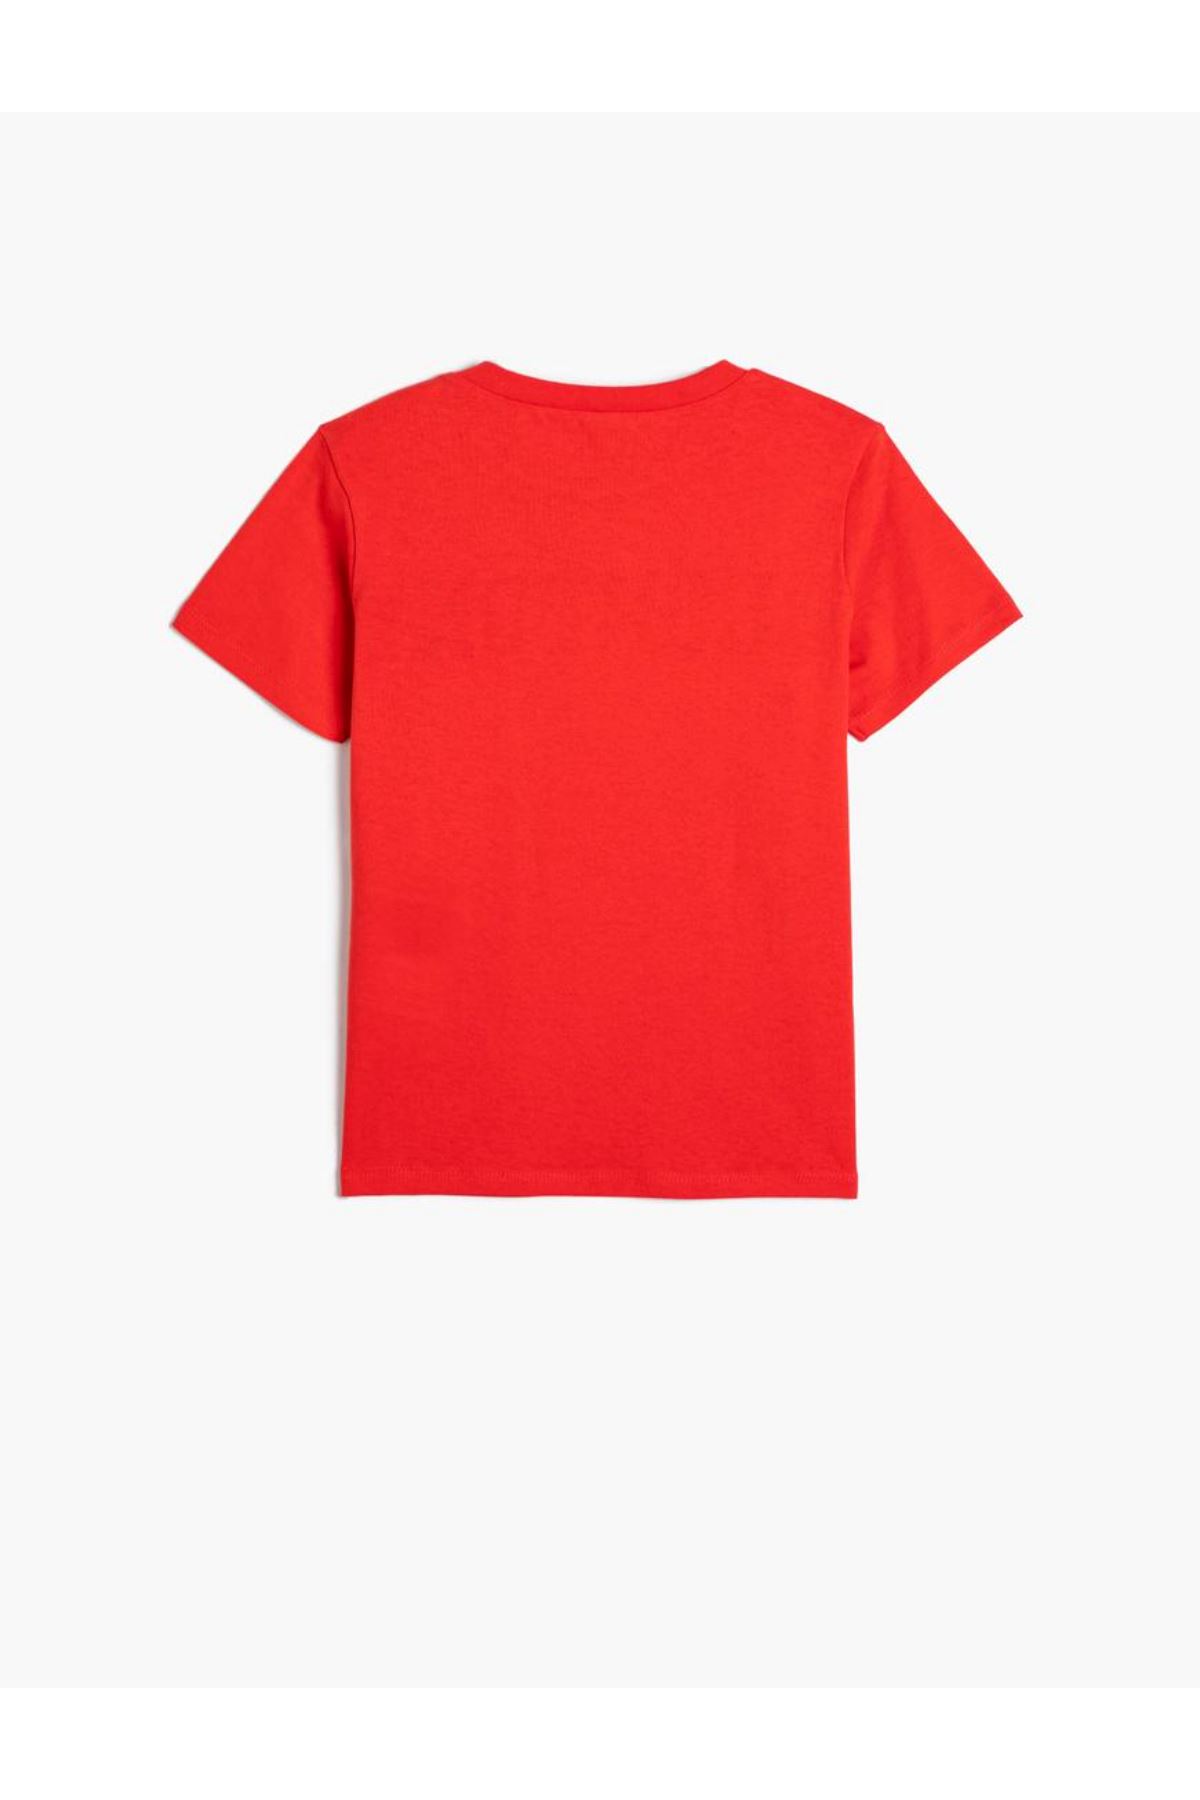 Koton Erkek Çocuk Kırmızı Tişört - 4SKB10108TK